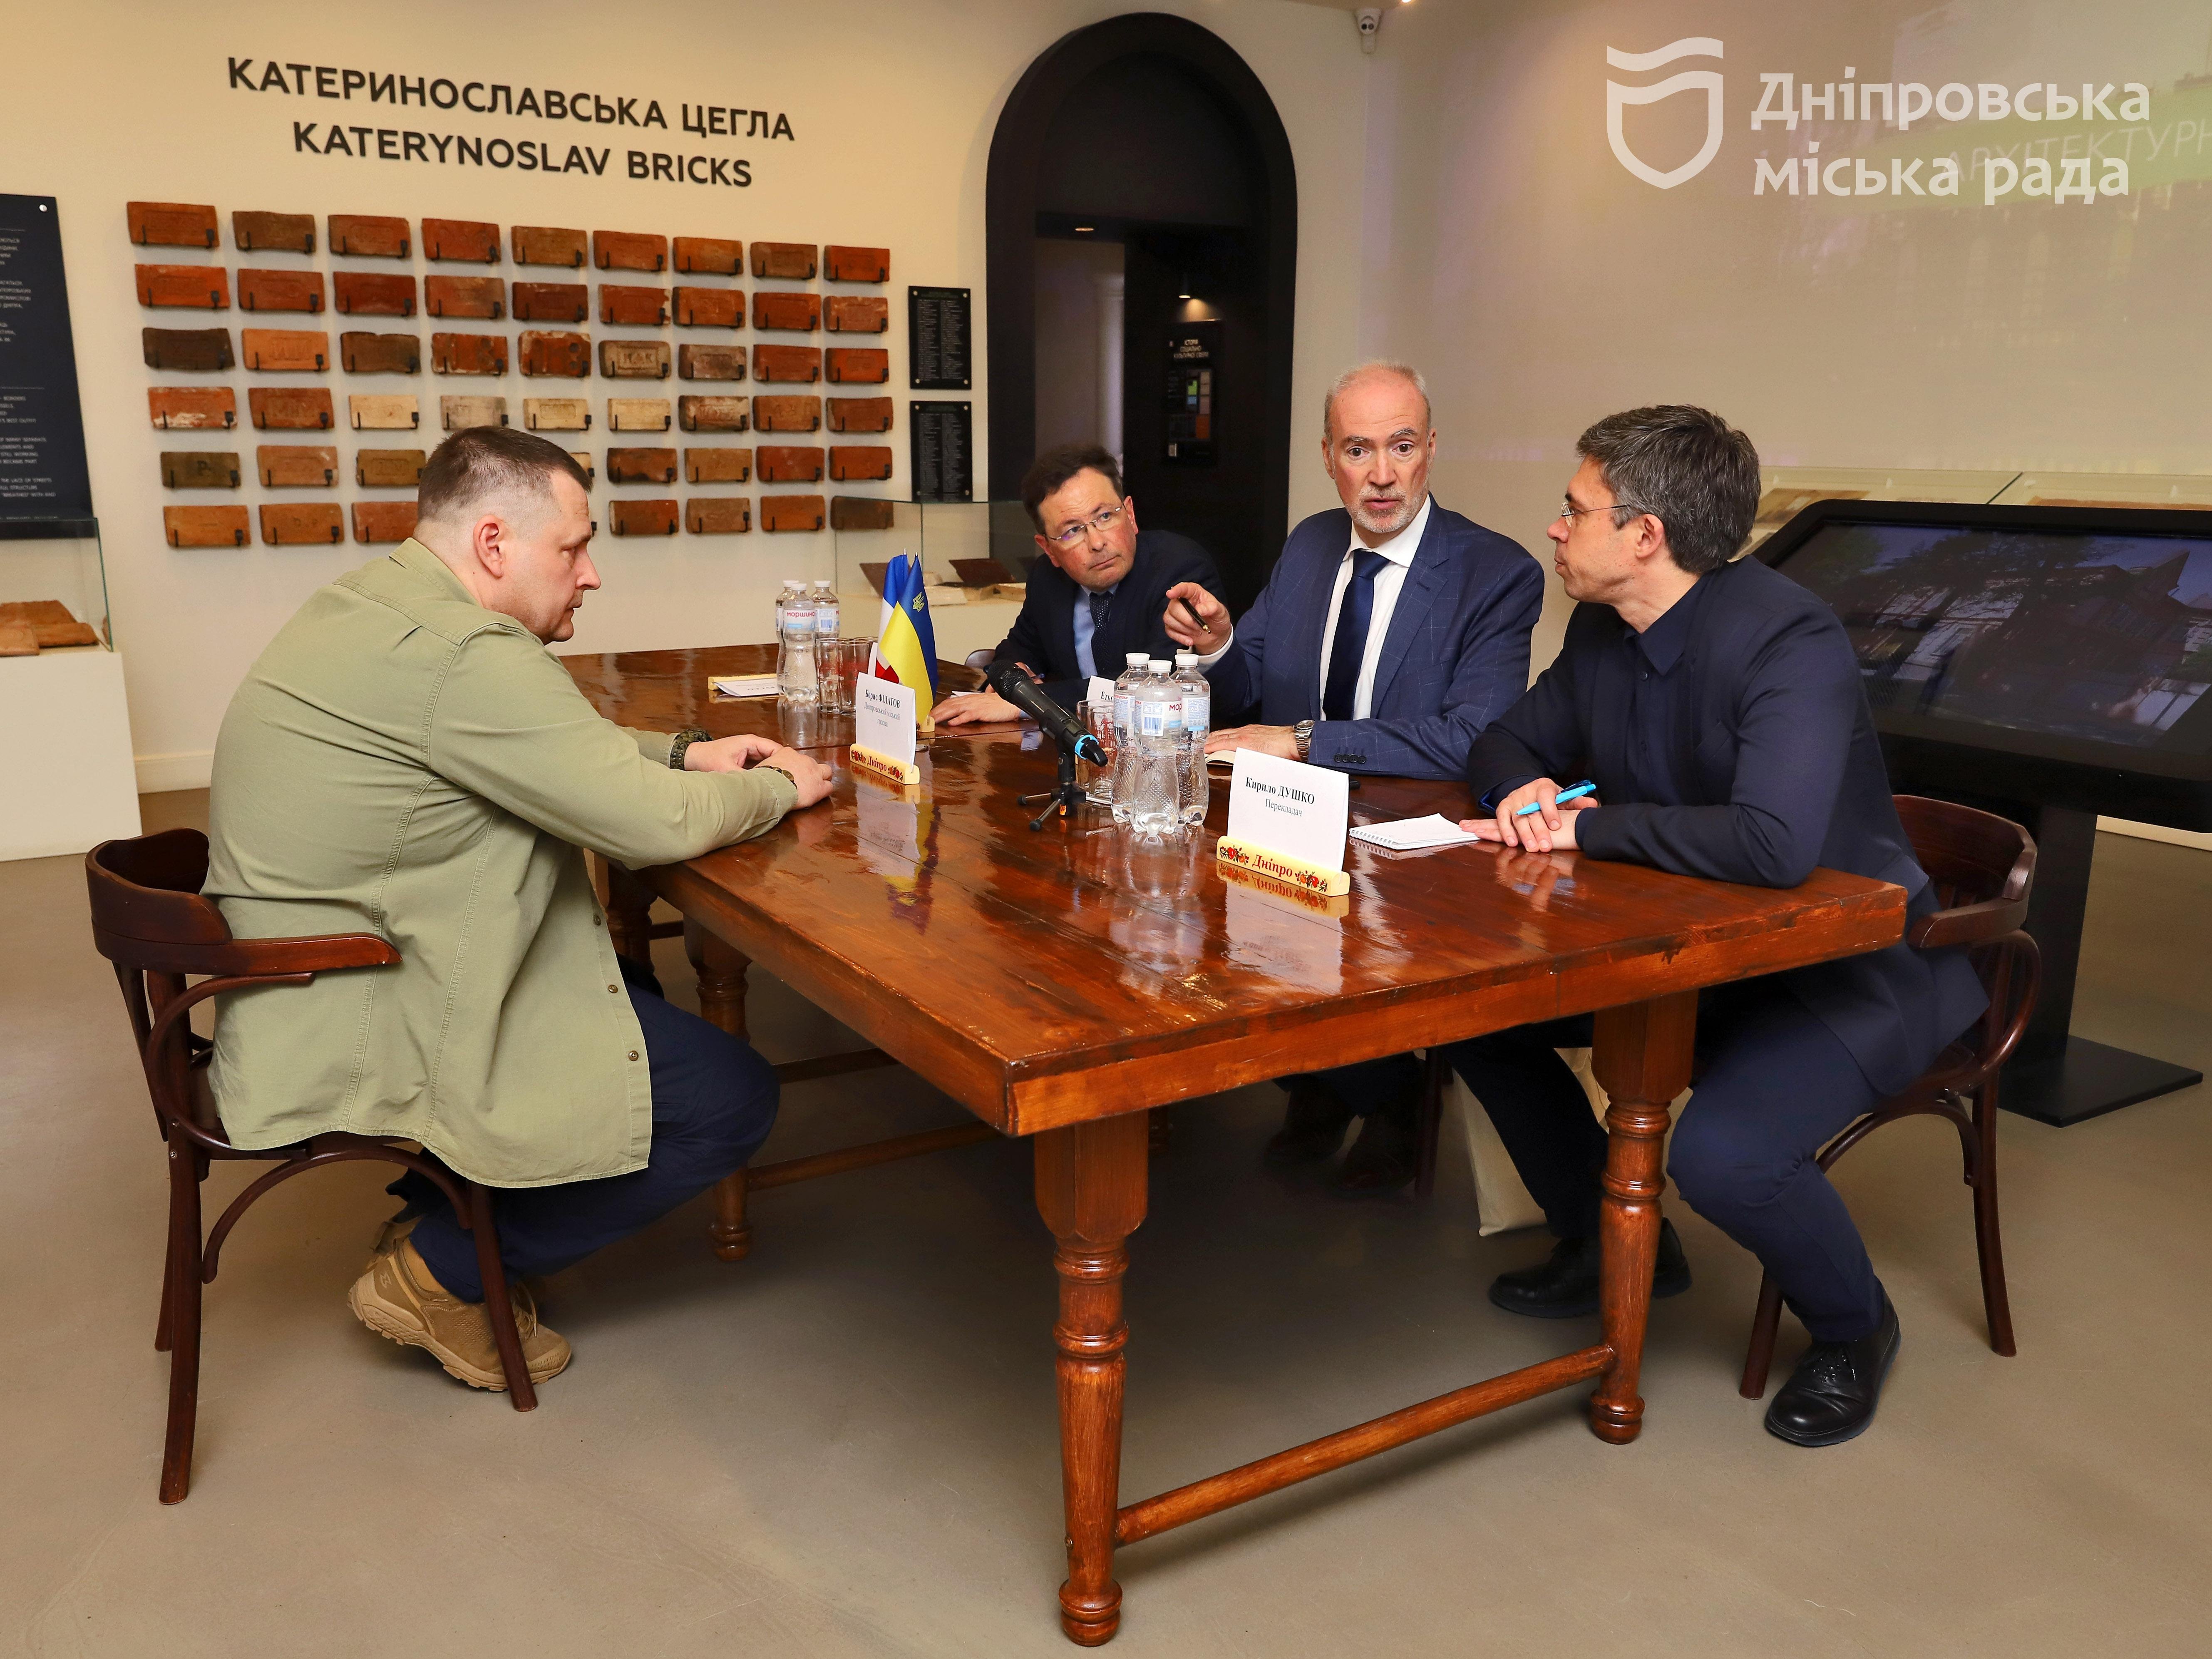 Мер Дніпра Борис Філатов обговорив з послом Франції в Україні перспективи співпраці та підтримки міста